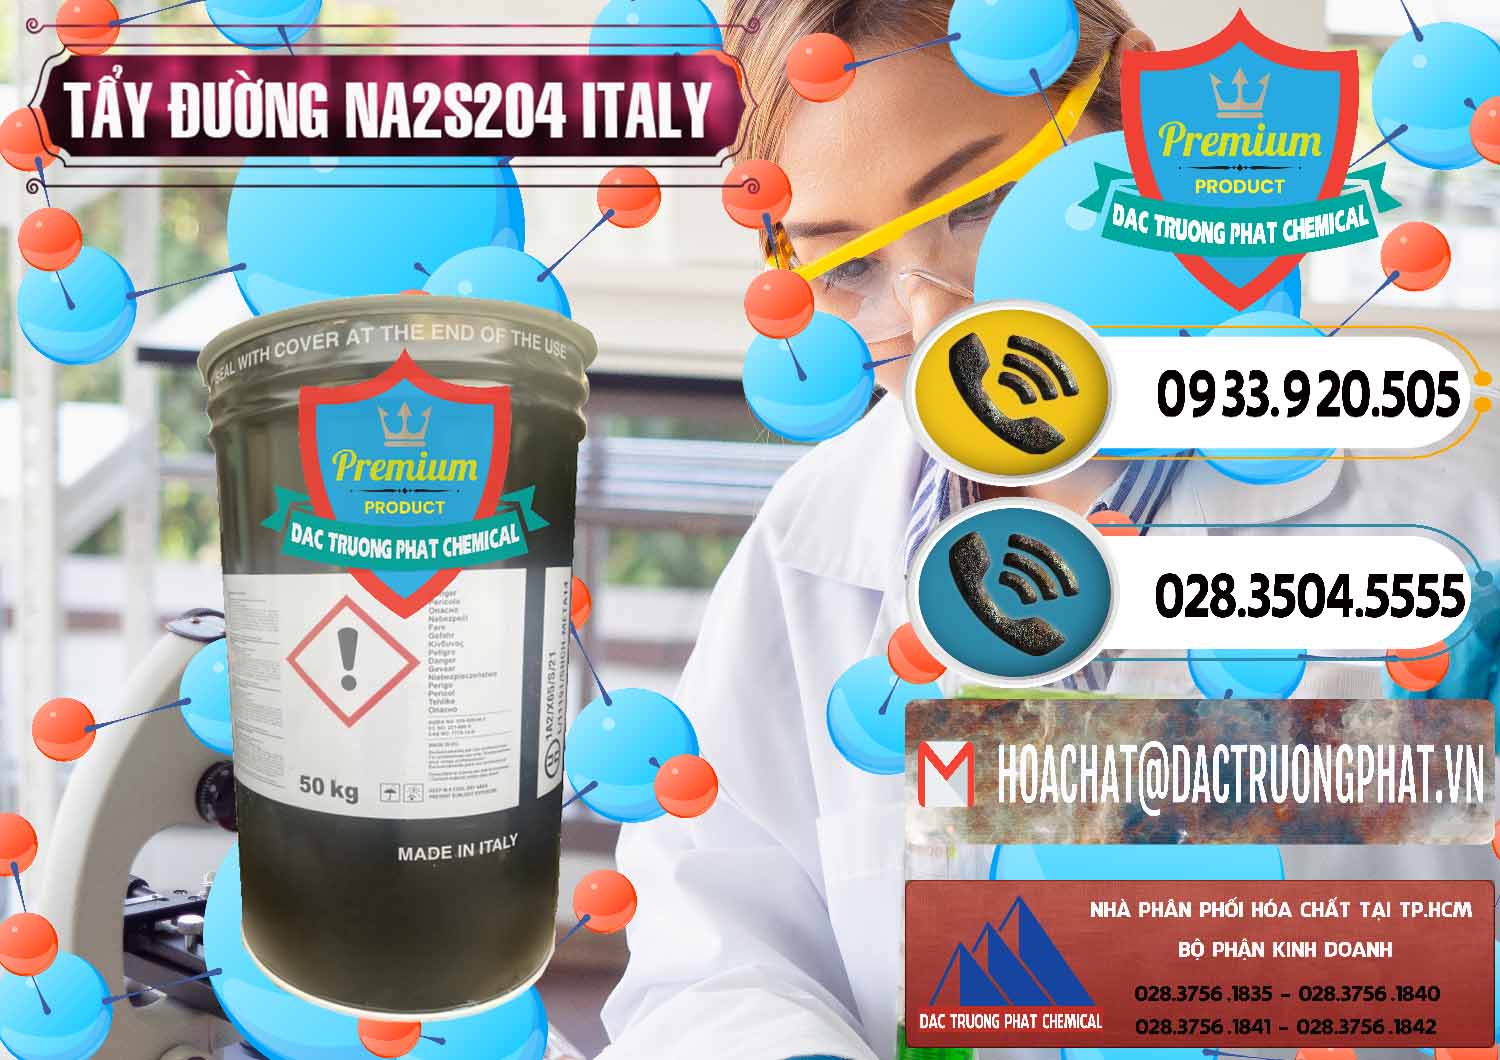 Cty chuyên nhập khẩu _ bán Tẩy Đường - NA2S2O4 Ý Italy - 0422 - Nơi cung cấp - phân phối hóa chất tại TP.HCM - hoachatdetnhuom.vn